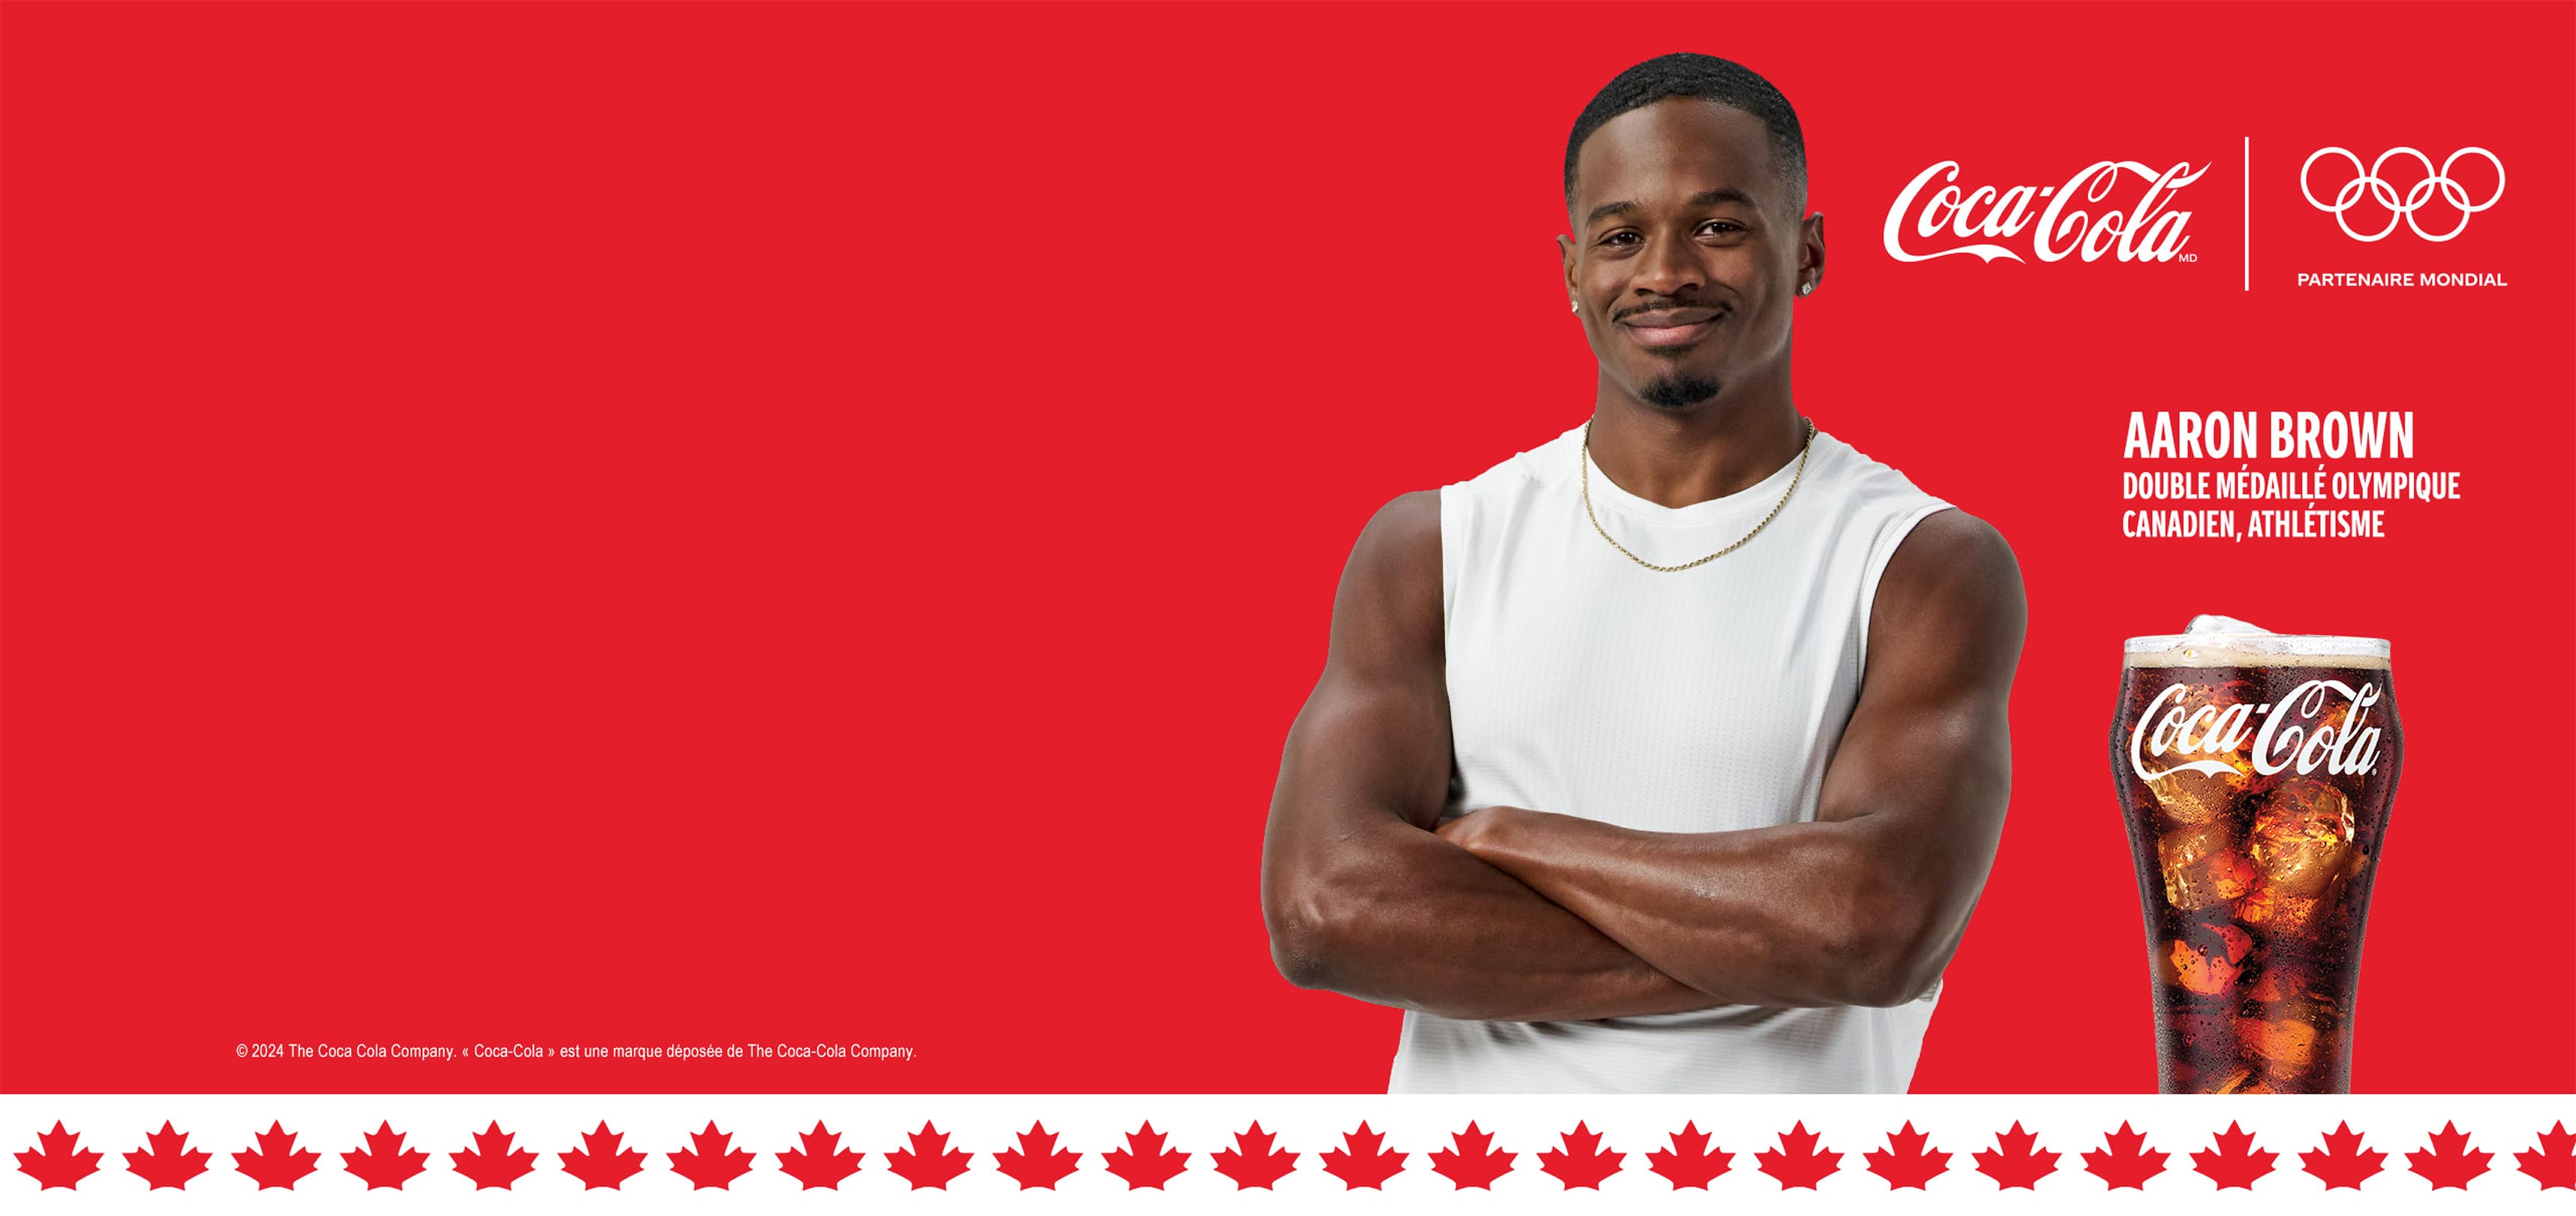 Coca-Cola + Jeux olympiques. Partenaire mondial. Aaron Brown, Double médaillé olympique canadien, athlétisme.